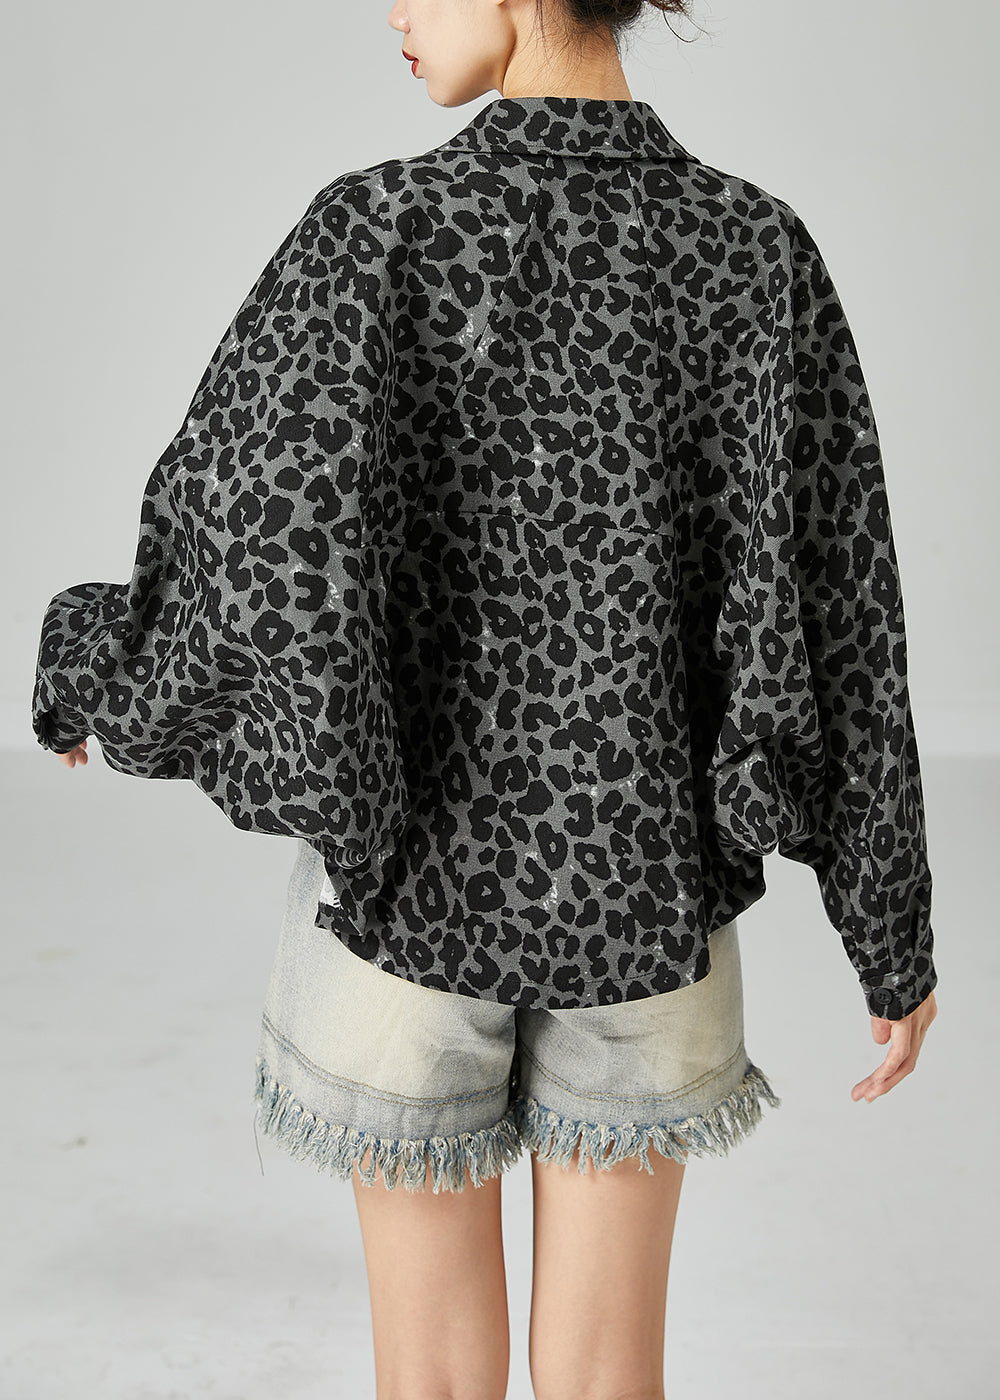 Grey Leopard Print Cotton Coats Peter Pan Collar Pocket Batwing Sleeve LY2440 - fabuloryshop